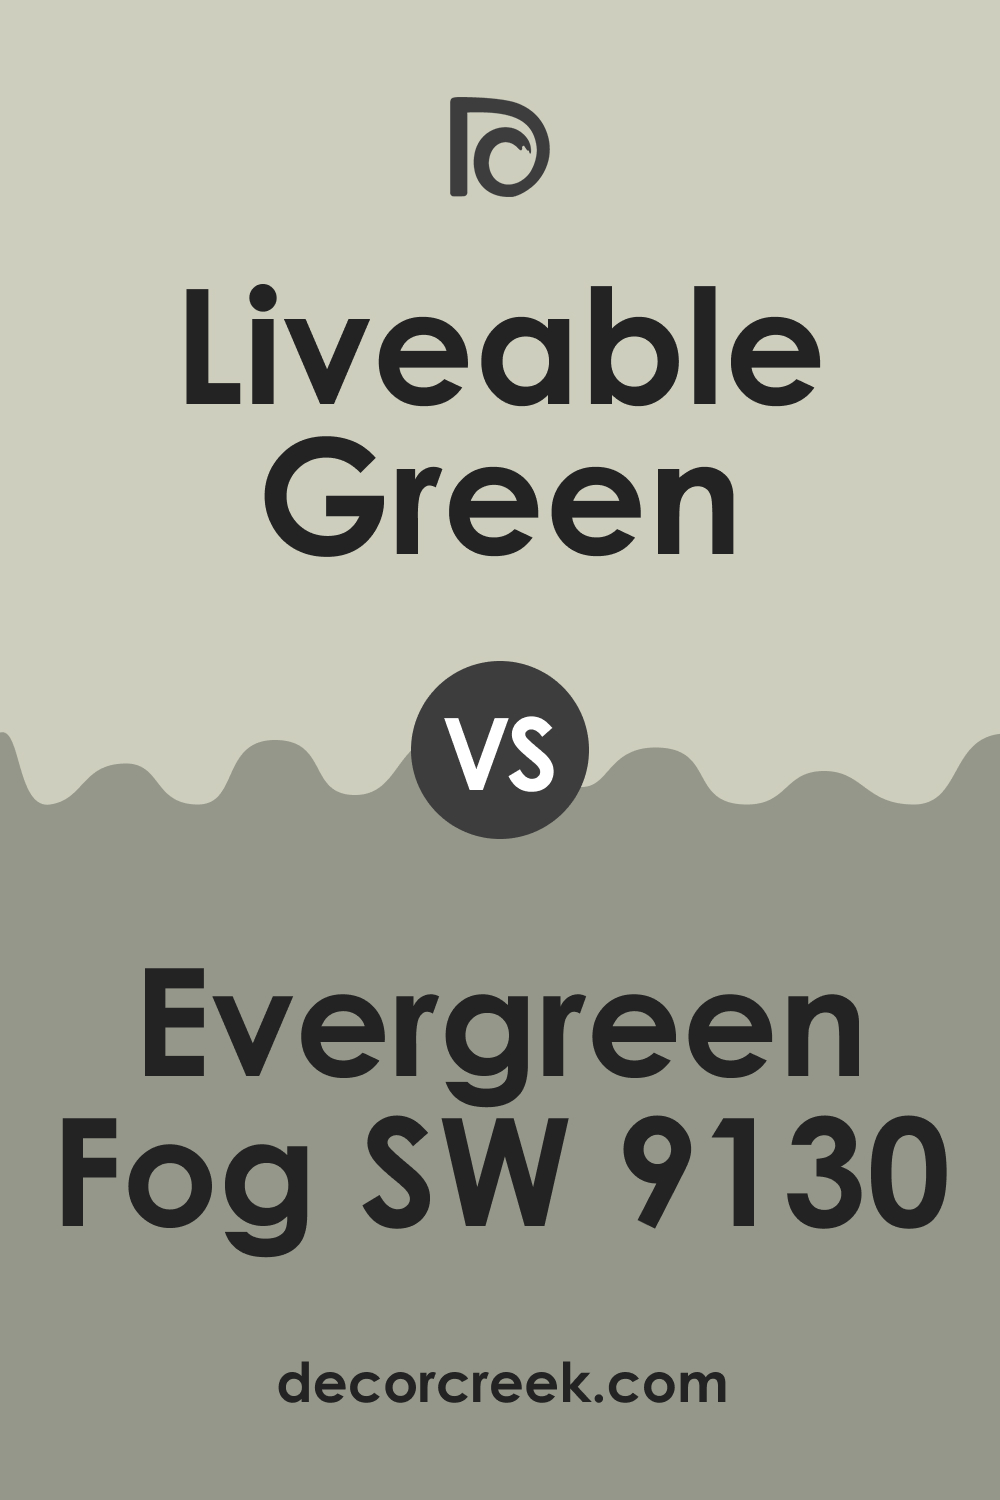 Liveable Green vs Evergreen Fog